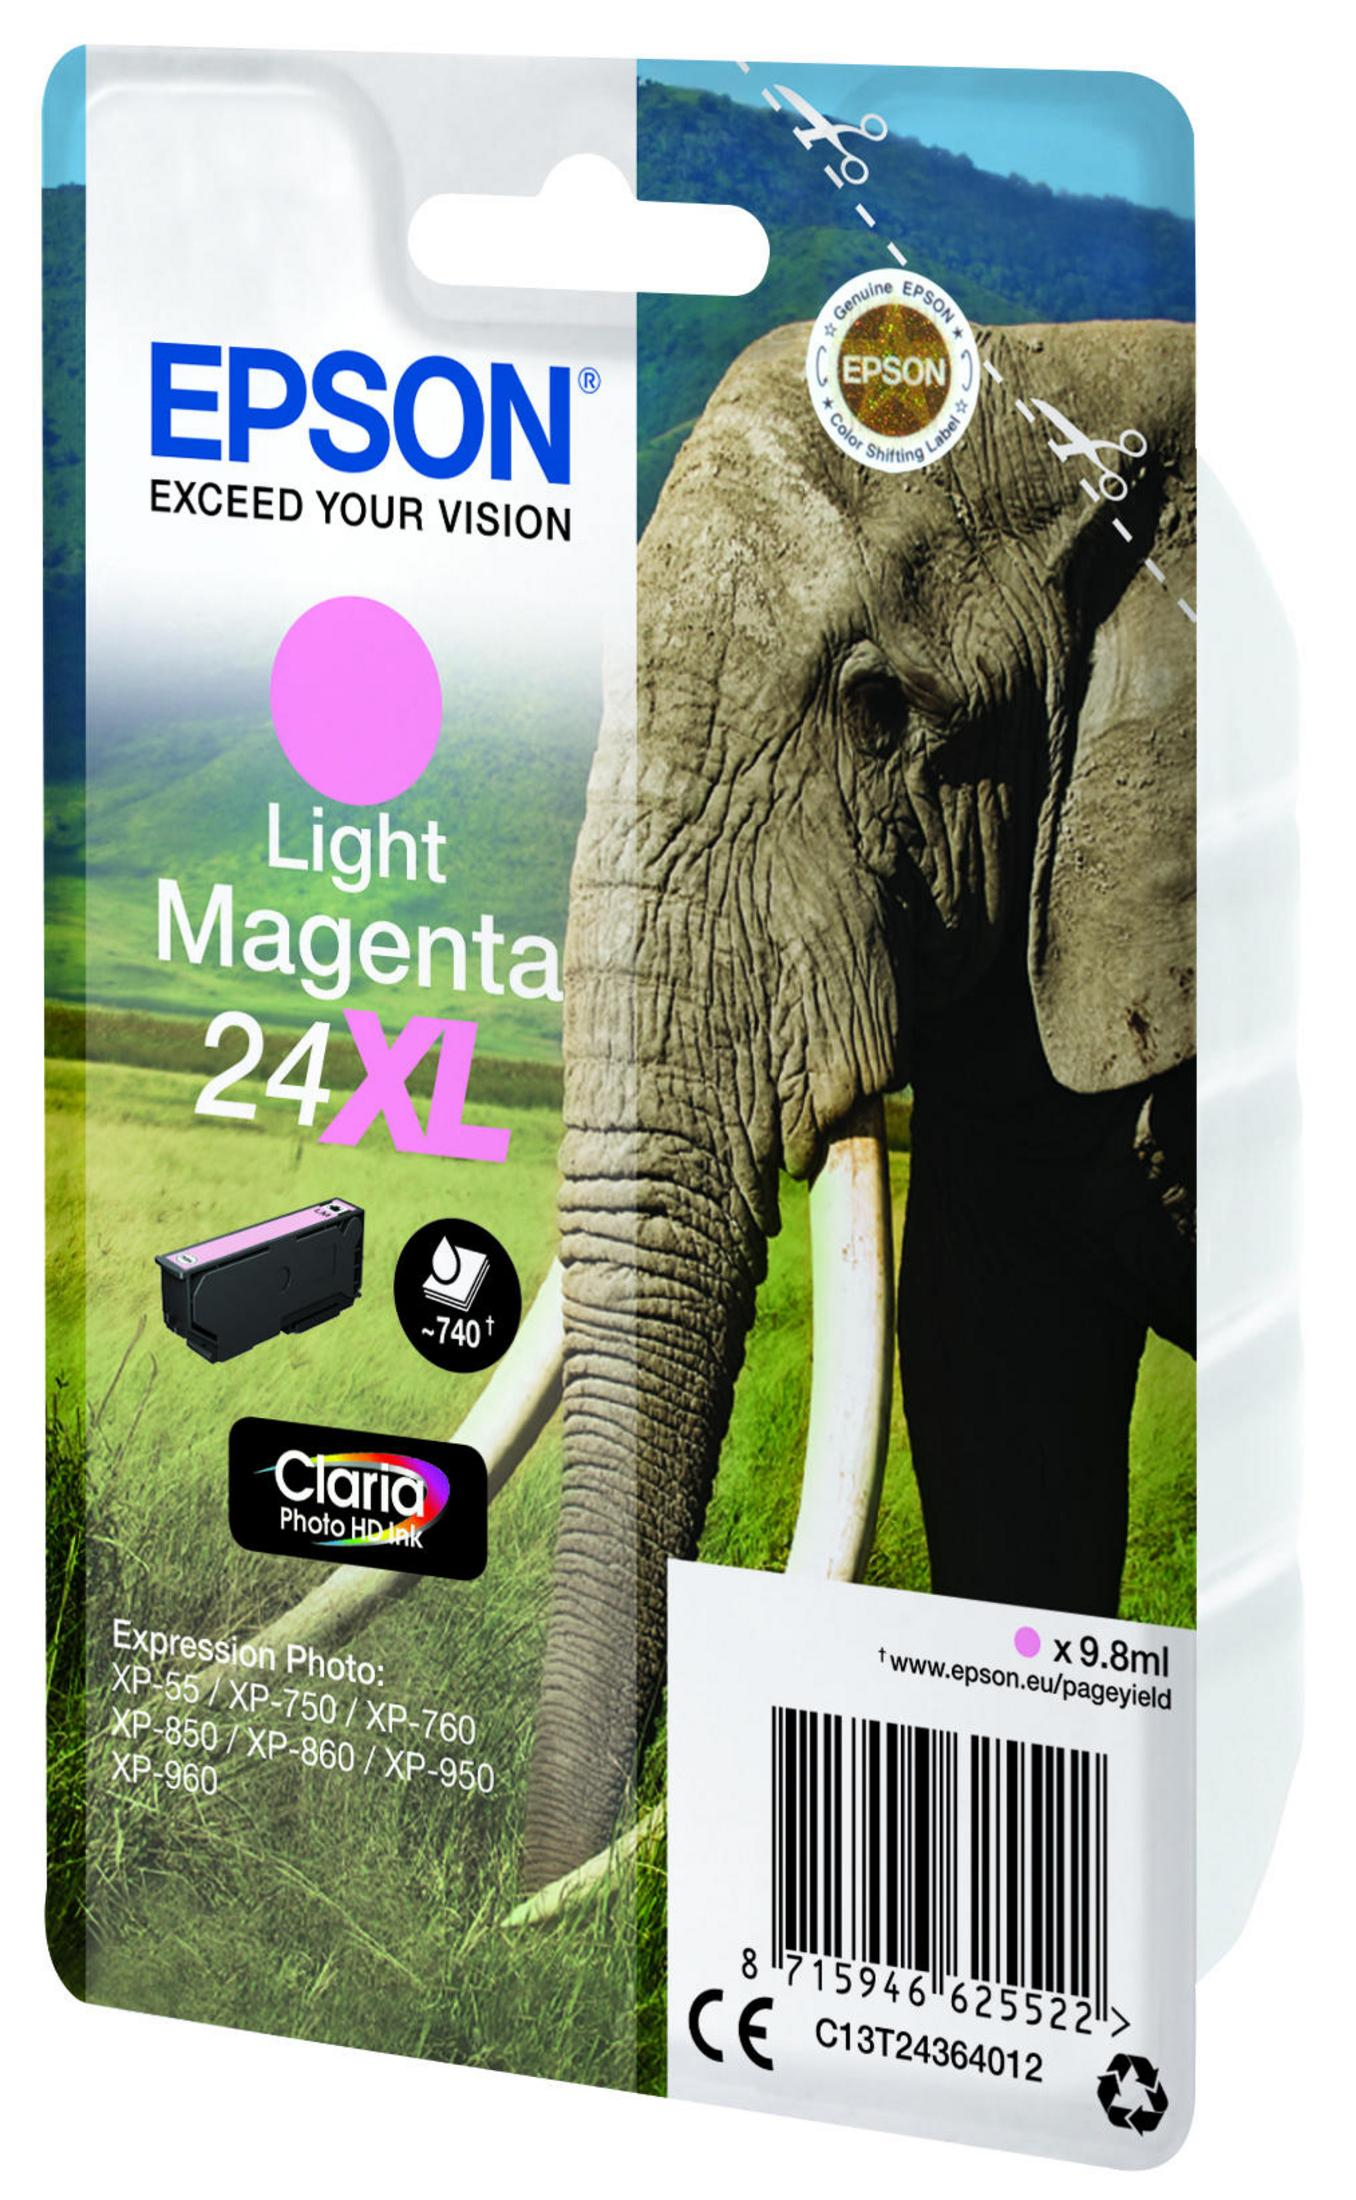 EPSON 24XL Tinte photo magenta (C13T24364012)